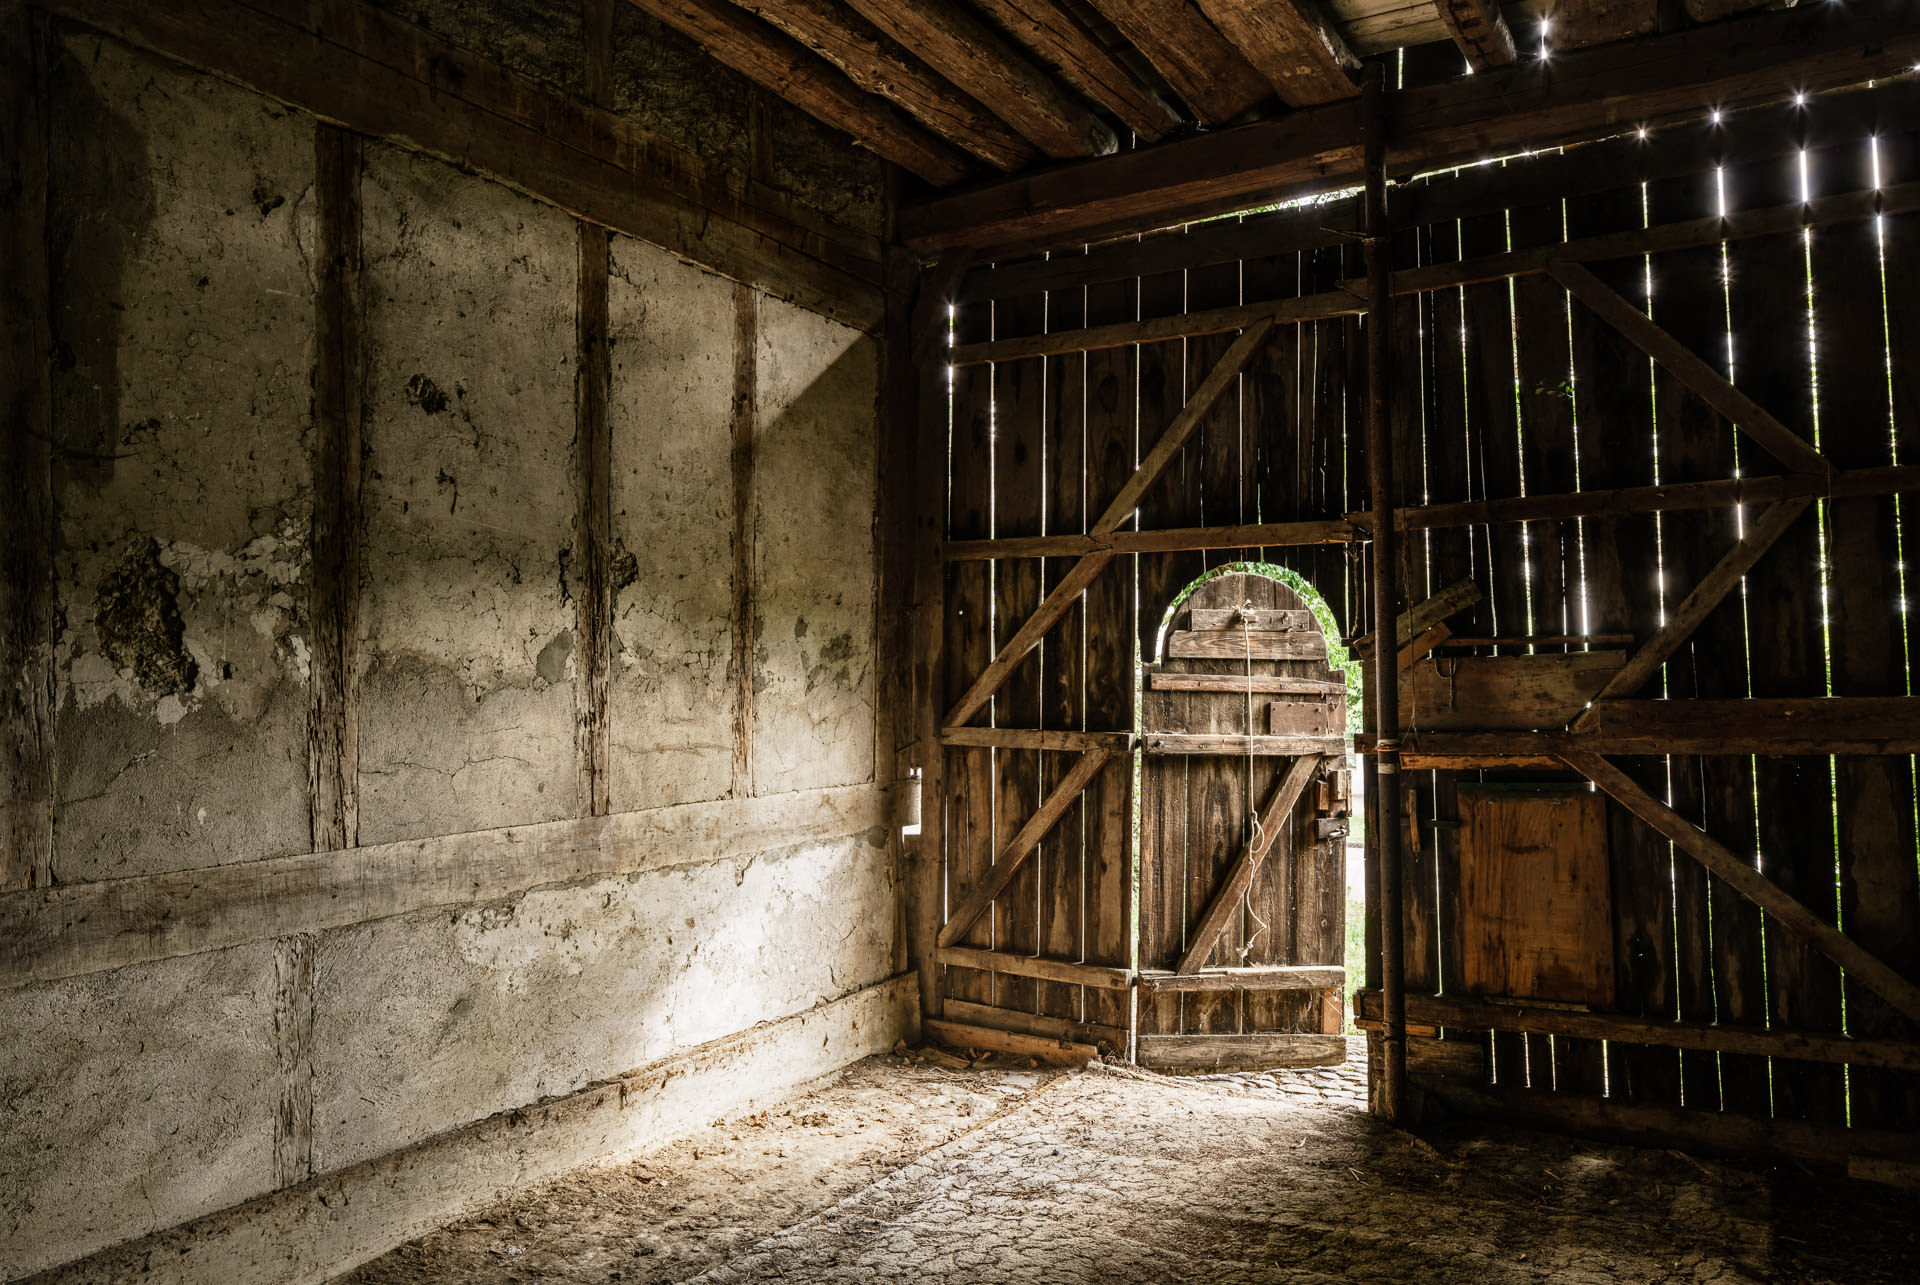 Architekturfotograf Zürich: Gebäude unter Denkmalschutz, ein altes Bauernhaus. Holzbau, Tür zu Stall